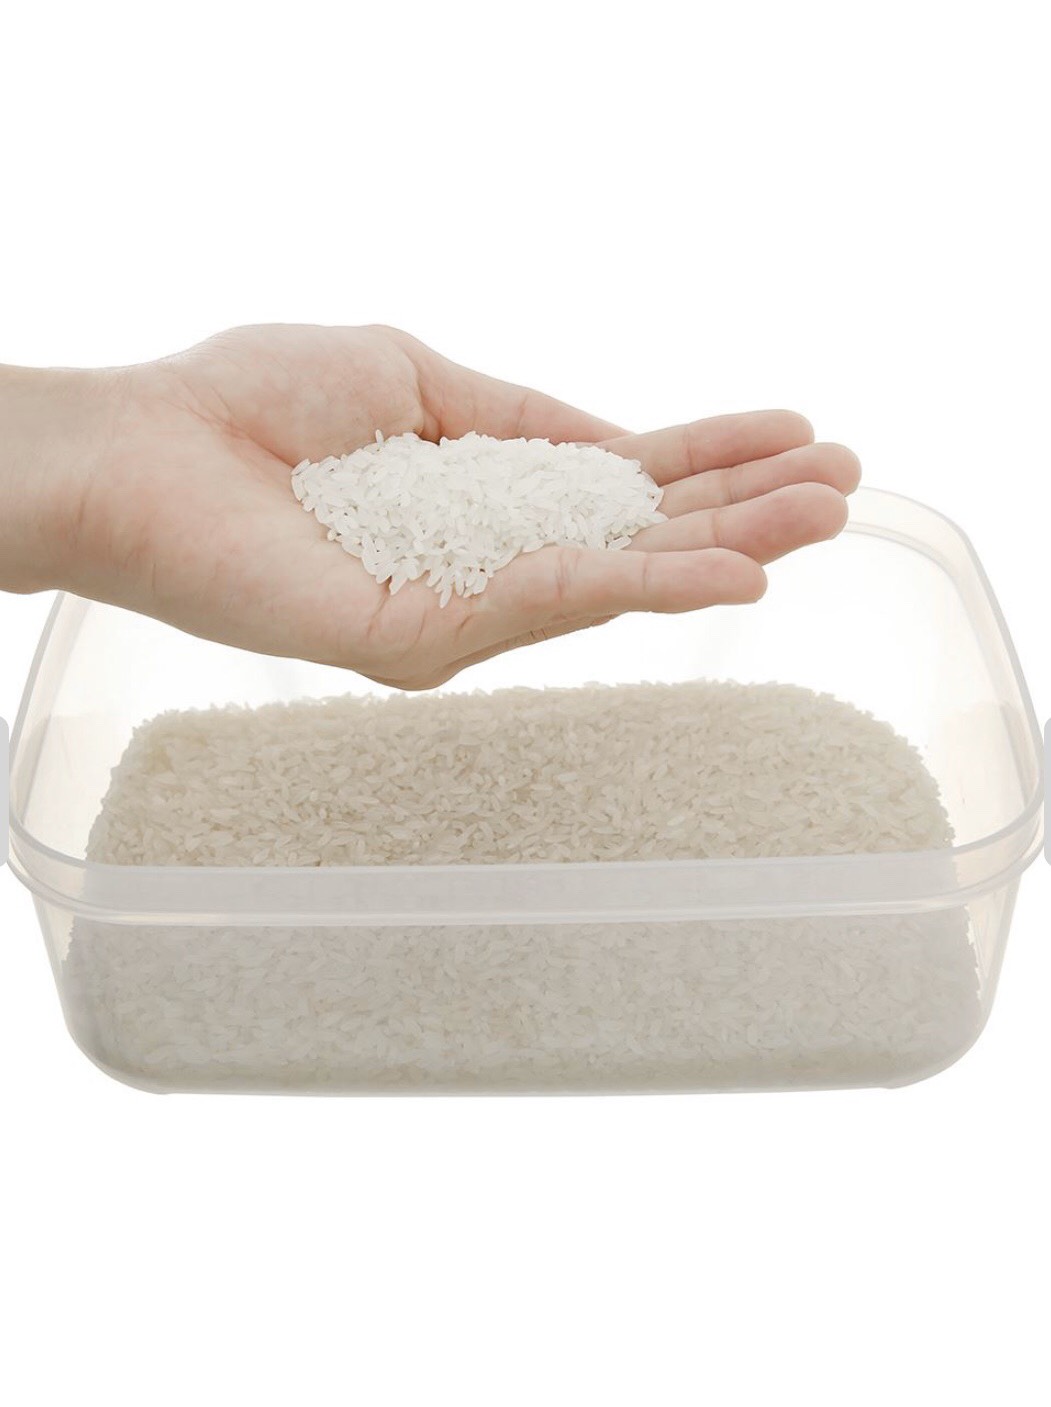 Gạo ST25 ( Dẻo mềm, ngọt cơm, thơm nhiều) Bao 10kg